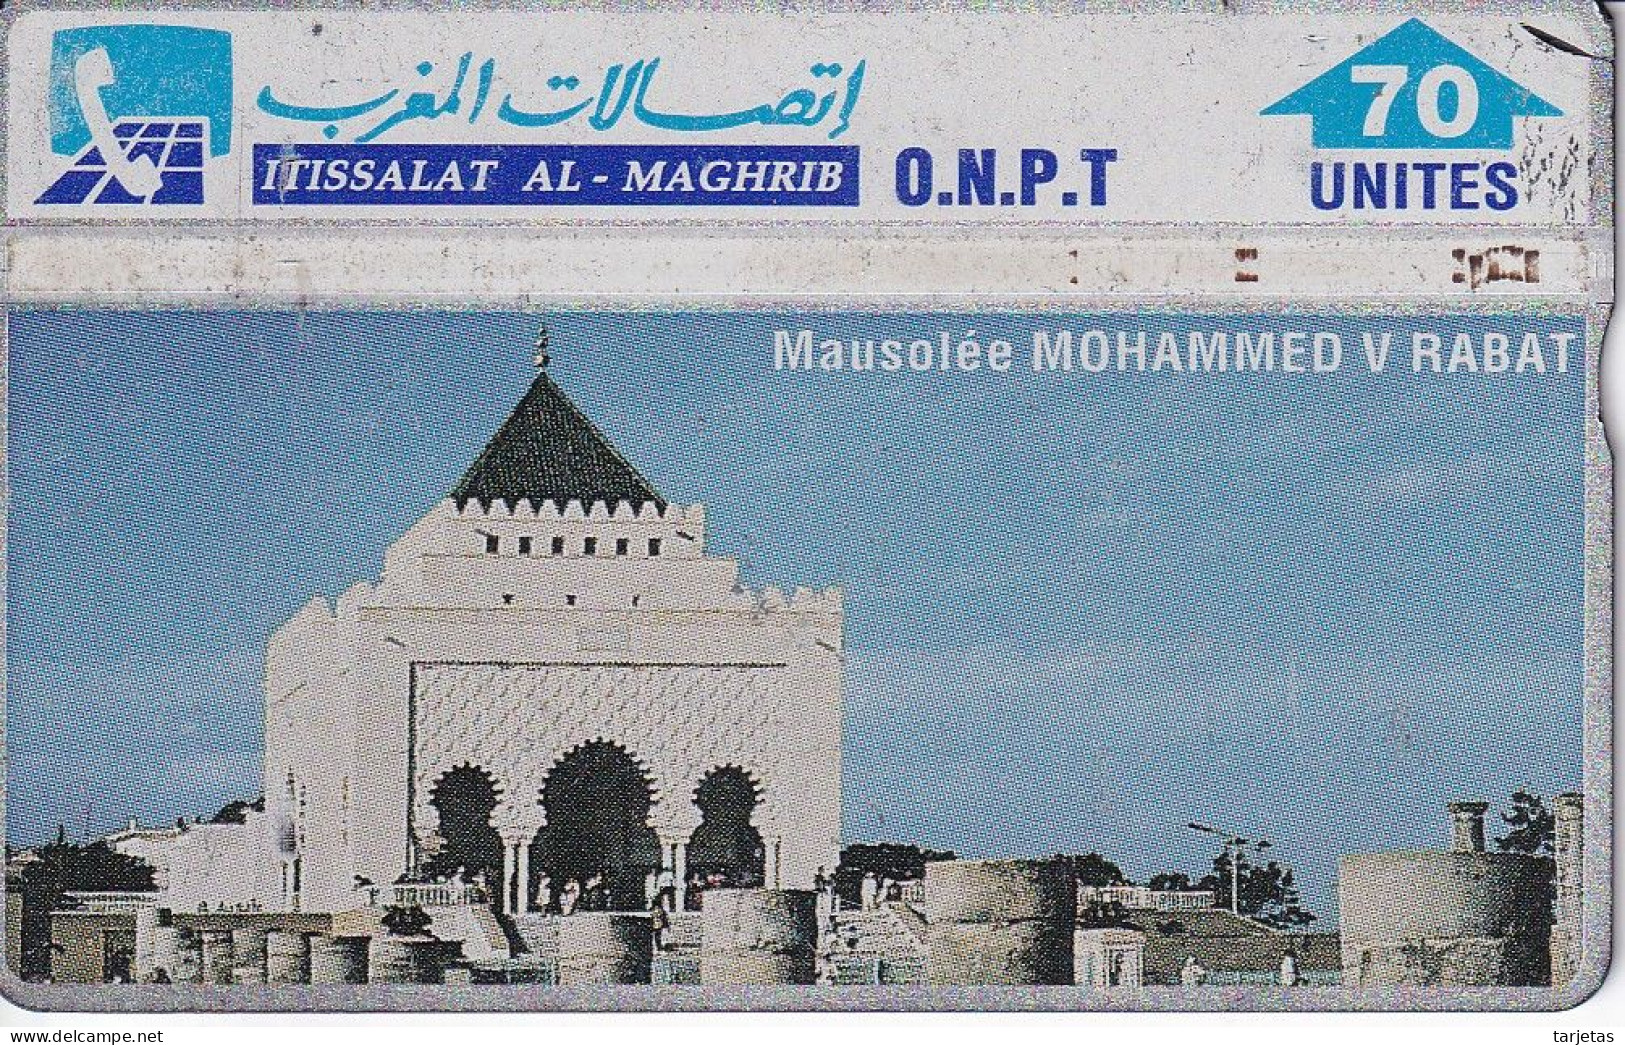 TARJETA DE MARRUECOS DE 70 UNITES MAUSOLEE MOHAMMED V RABAT (310E) - Morocco